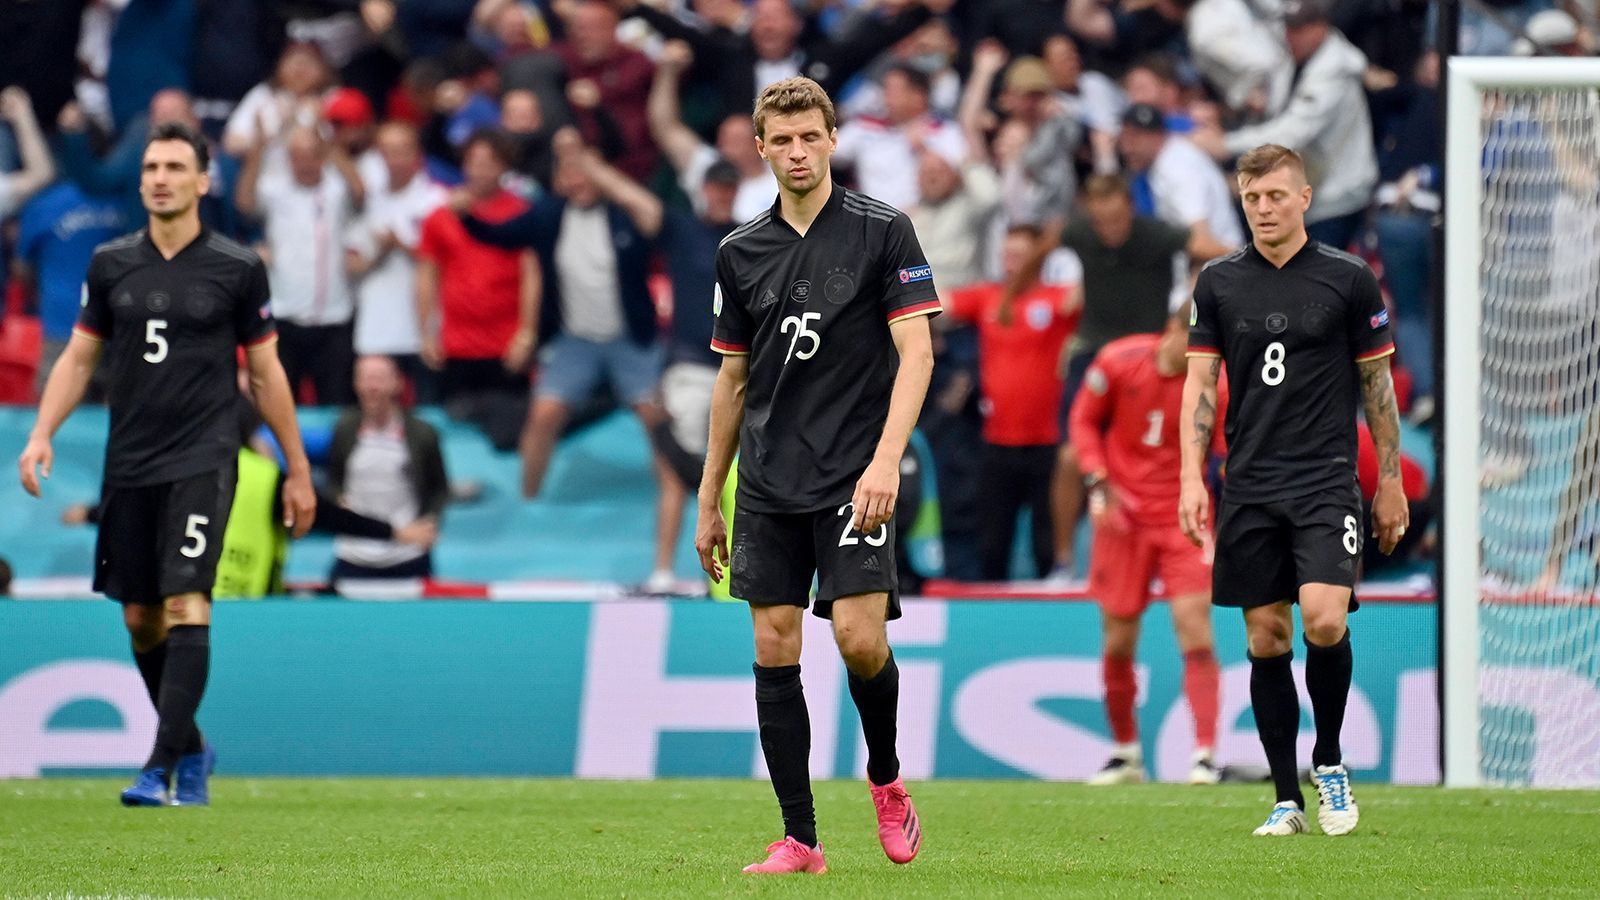 
                <strong>Europameisterschaft 2020 (2021)</strong><br>
                Nach dem Ausscheiden bei der WM 2018, wollte die Nationalmannschaft 2021 für "Wiedergutmachung" sorgen. Doch dieser Plan erwies sich schnell als schwierig. Das Auftaktspiel gegen Frankreich verlor die DFB-Elf mit 0:1. In der zweiten Partie, beim 4:2-Erfolg über Portugal, lieferte Robin Gosens eine starke Partie ab und spielte sich in die Herzen der deutschen Fans. Mit einem schwachen 2:2 gegen den Außenseiter aus Ungarn zog Deutschland knapp ins Achtelfinale ein. Dort behielt England die Oberhand. Die 0:2-Niederlage gegen die "Three Lions" war die letzte Partie von Joachim Löw als Bundestrainer. Sein Nachfolger wurde Ex-Bayern-Coach Hansi Flick.
              